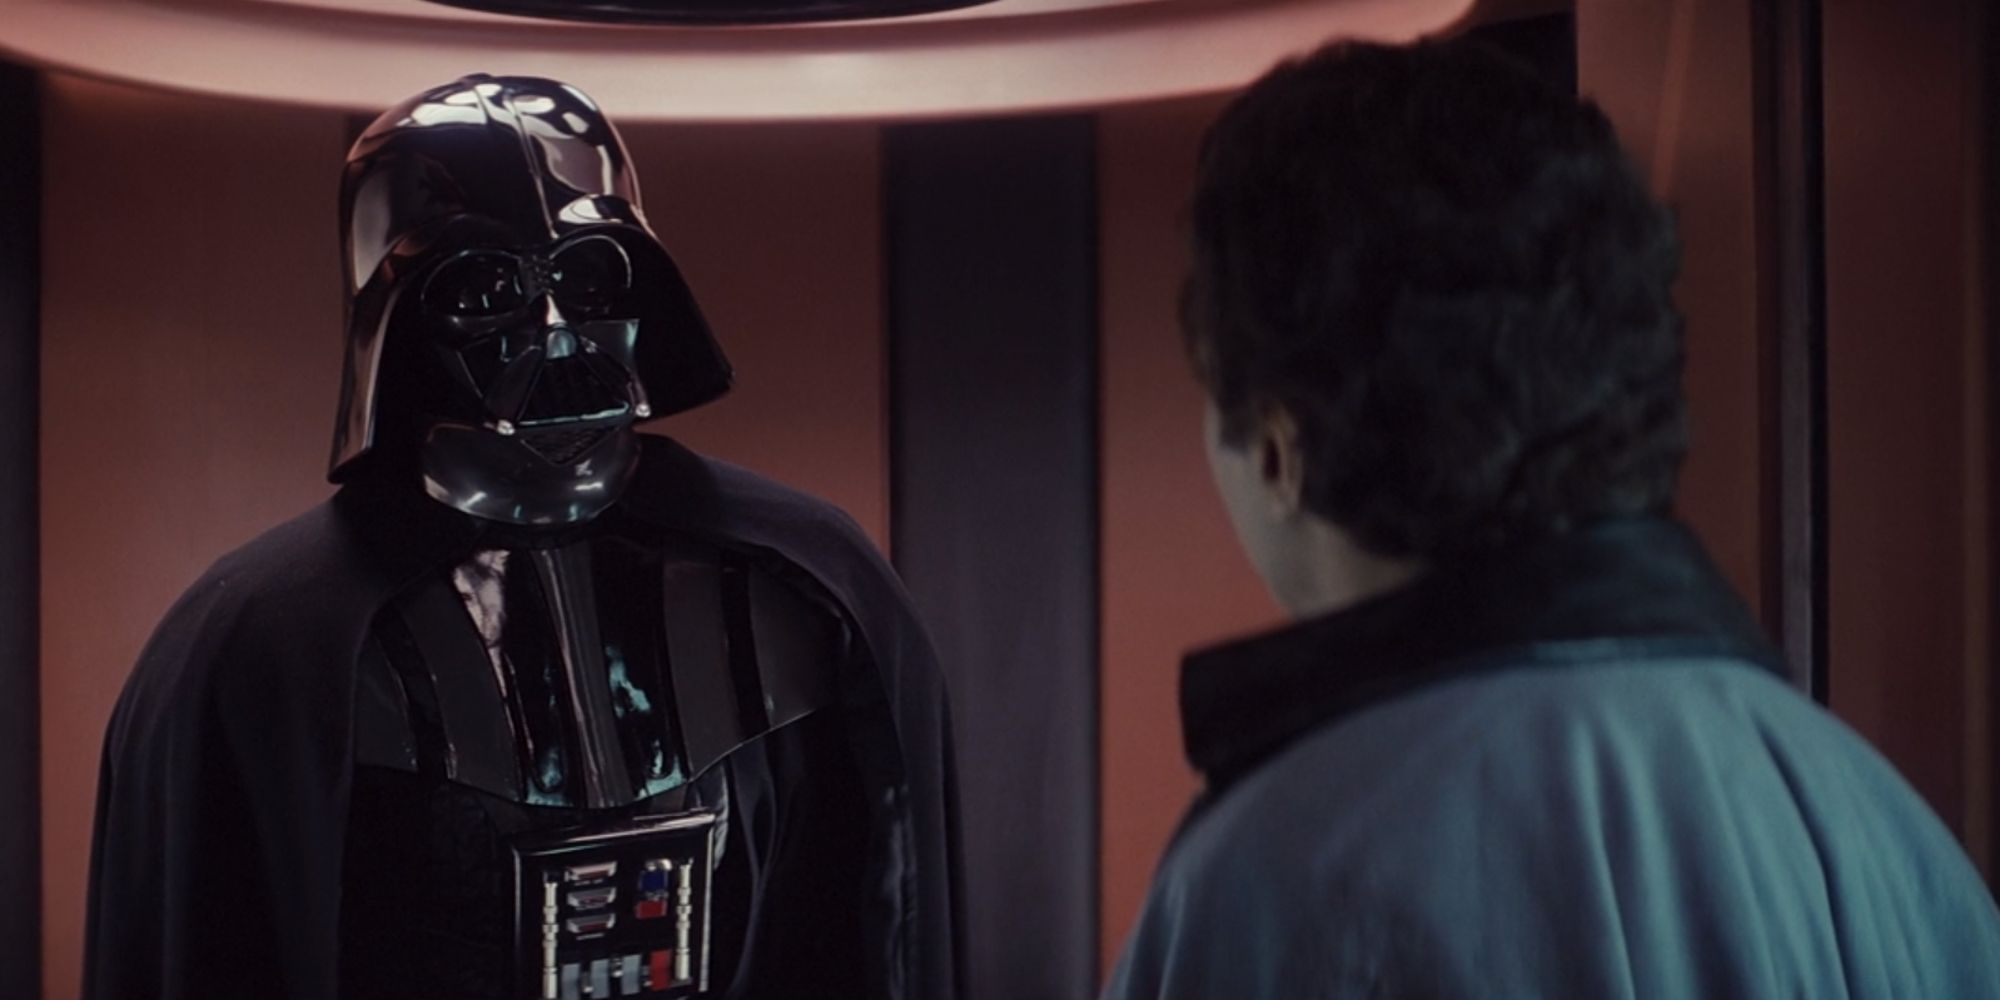 Darth Vader threatening Lando Calrissian in the Empire Strikes Back